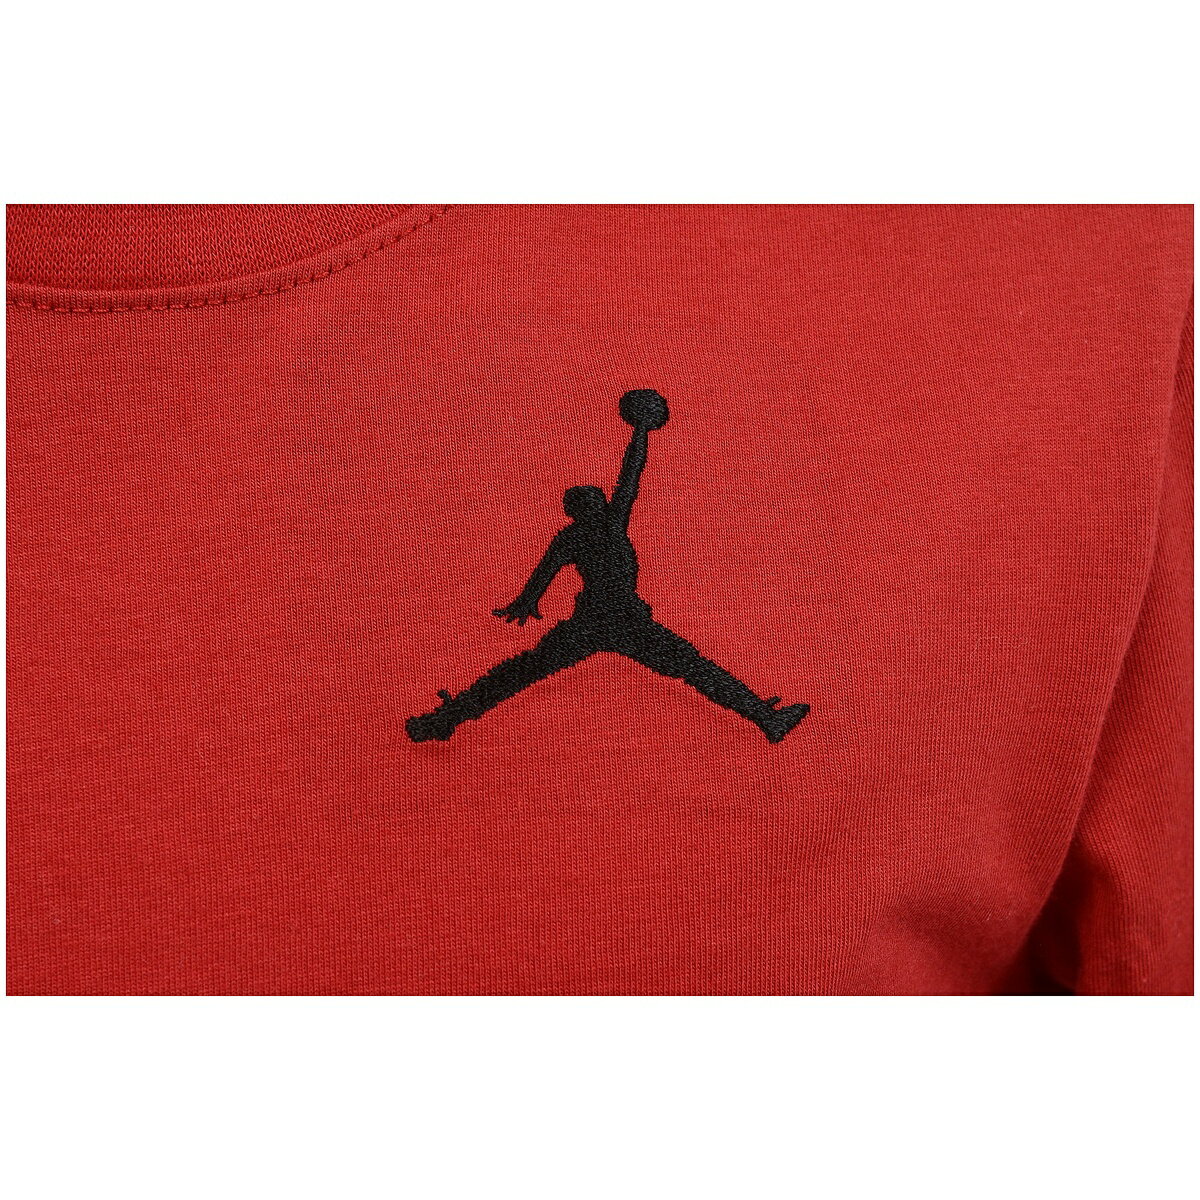 ナイキ (NIKE) JUMPMAN LONG SLEEVE T-SHIRT ジュニアスポーツウェア Tシャツ ボーイズ R78(赤) 85A903-R78